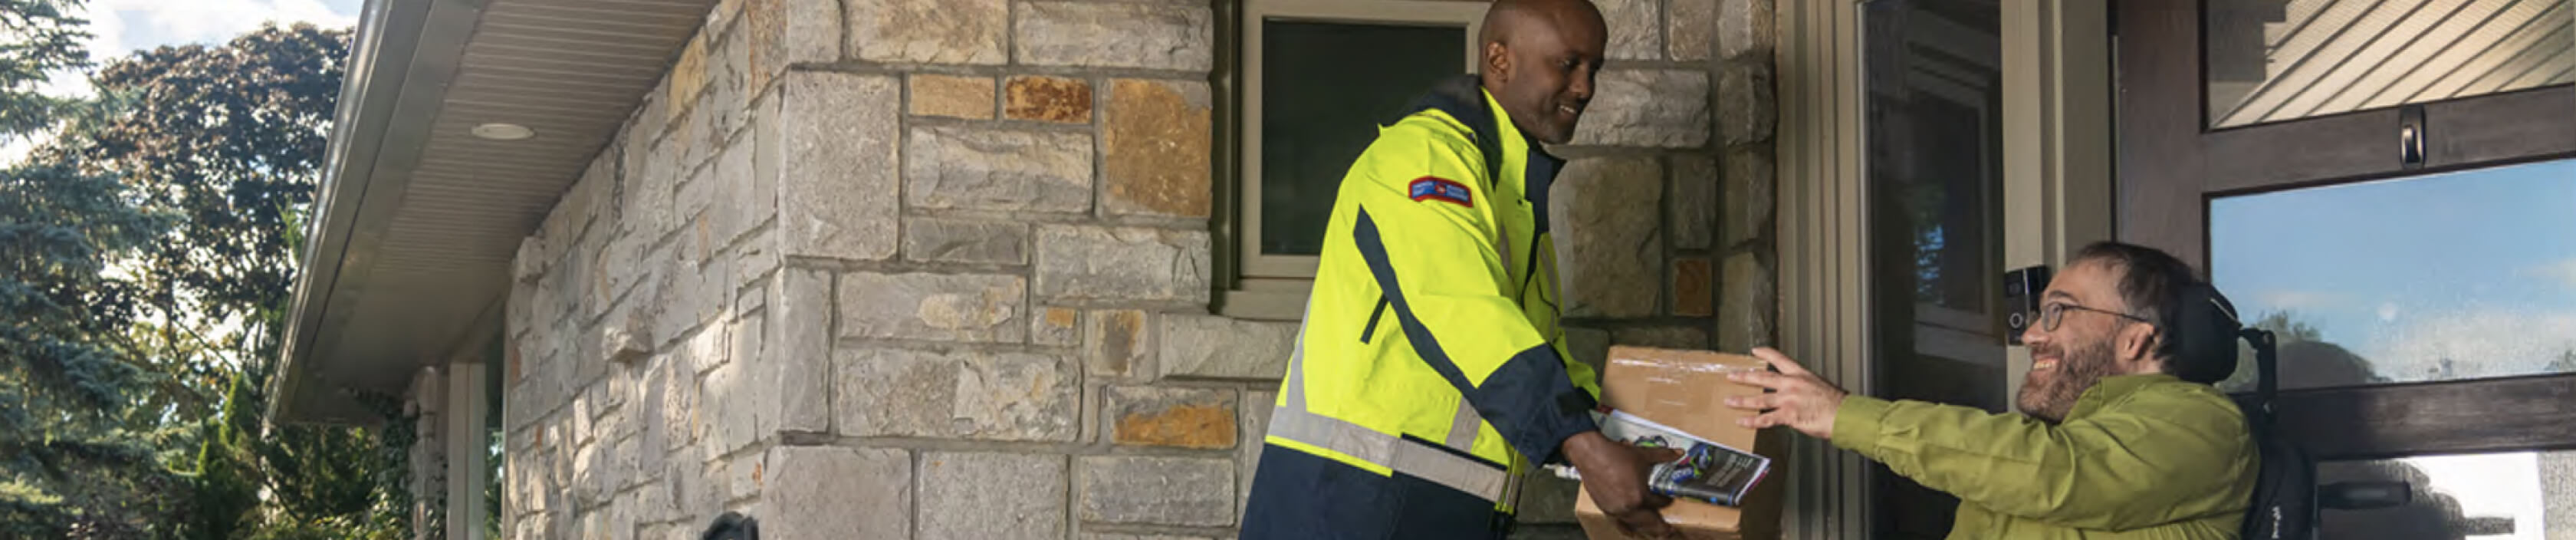 Un agent de livraison de Postes Canada tend un colis à un homme en fauteuil roulant devant sa porte d’entrée. 